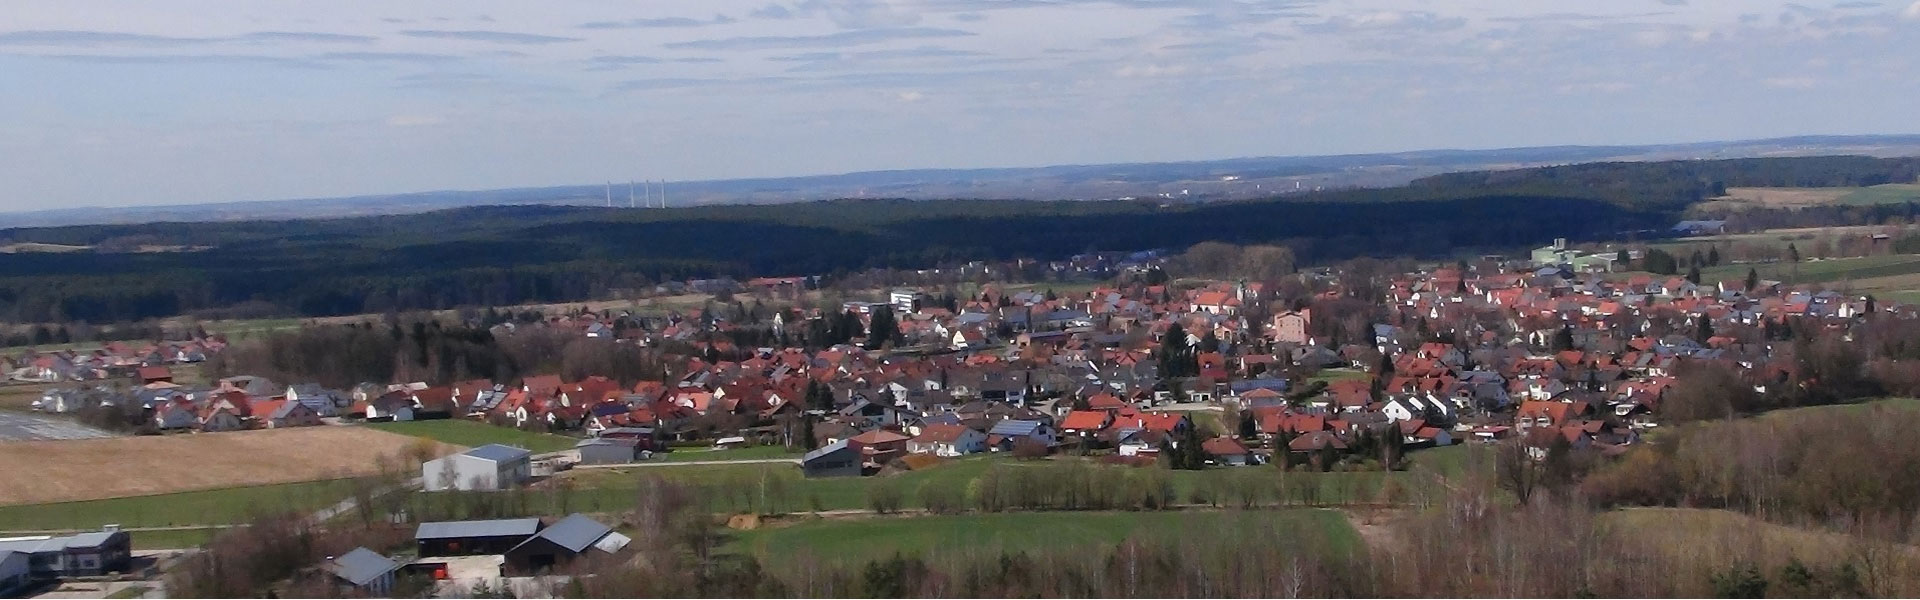 Headerbild - Blick auf Siegenburg